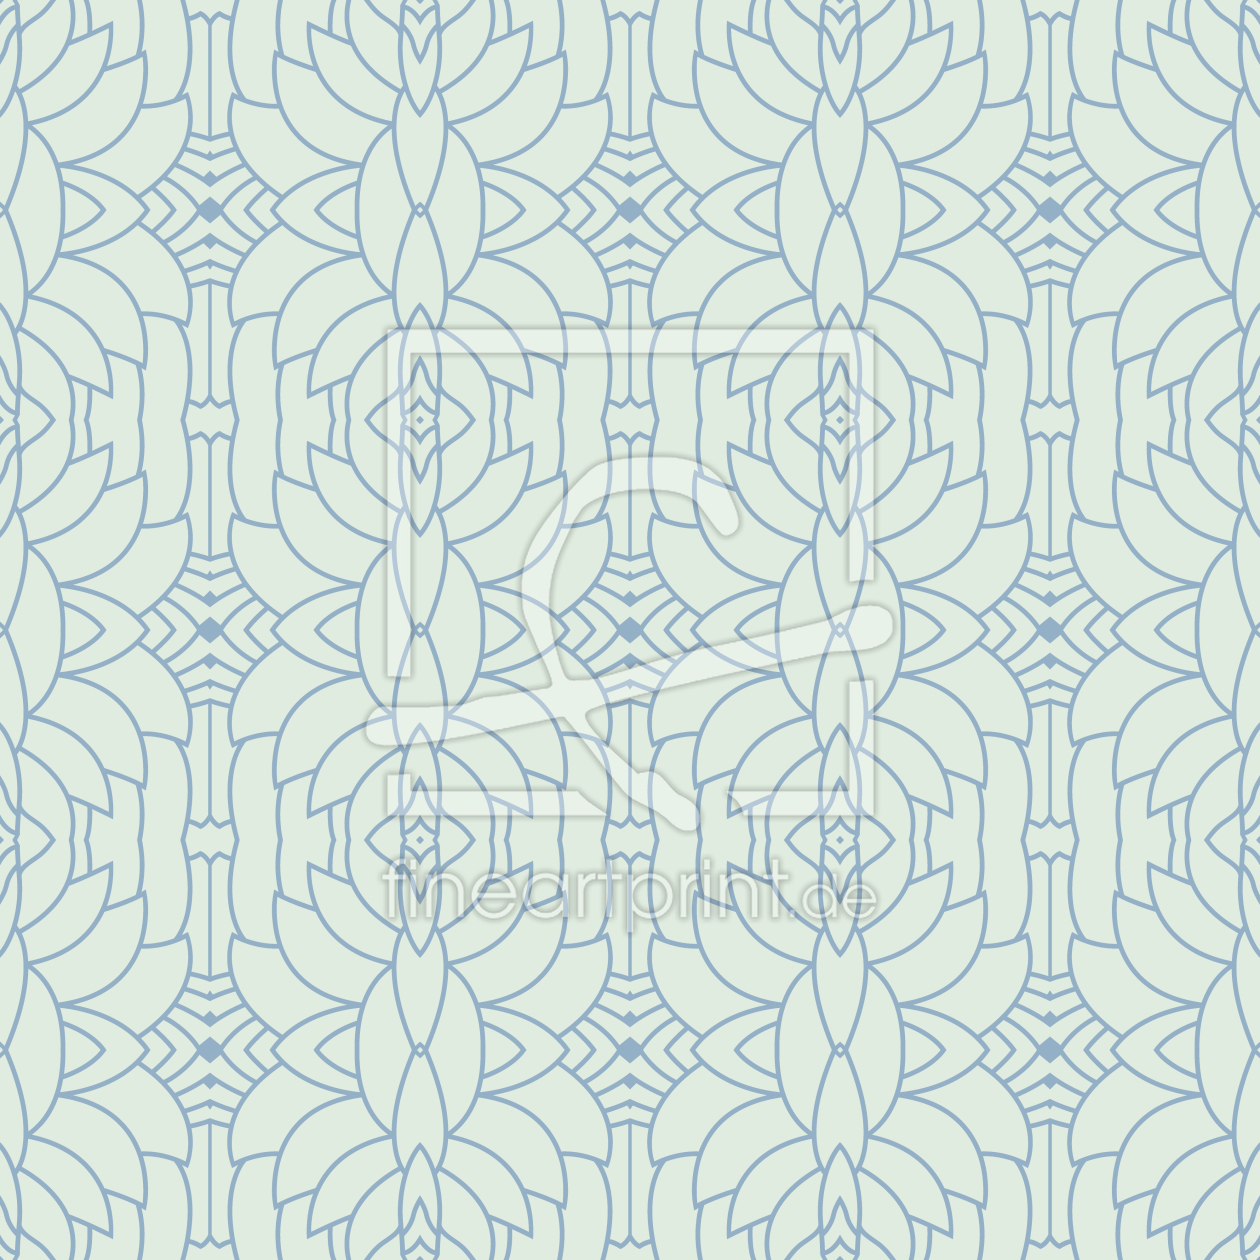 Bild-Nr.: 9008079 Deko Sukkulenten erstellt von patterndesigns-com